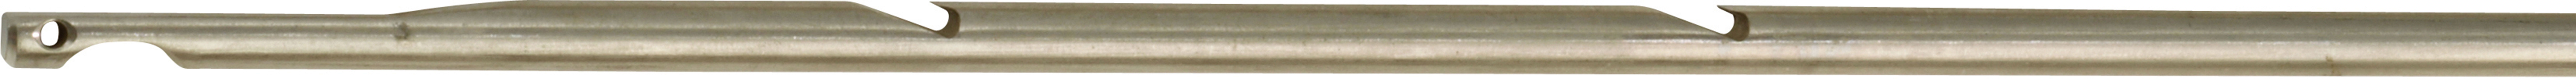 Šíp so závitom pre harpúny s gumou Ø 6.5 mm 